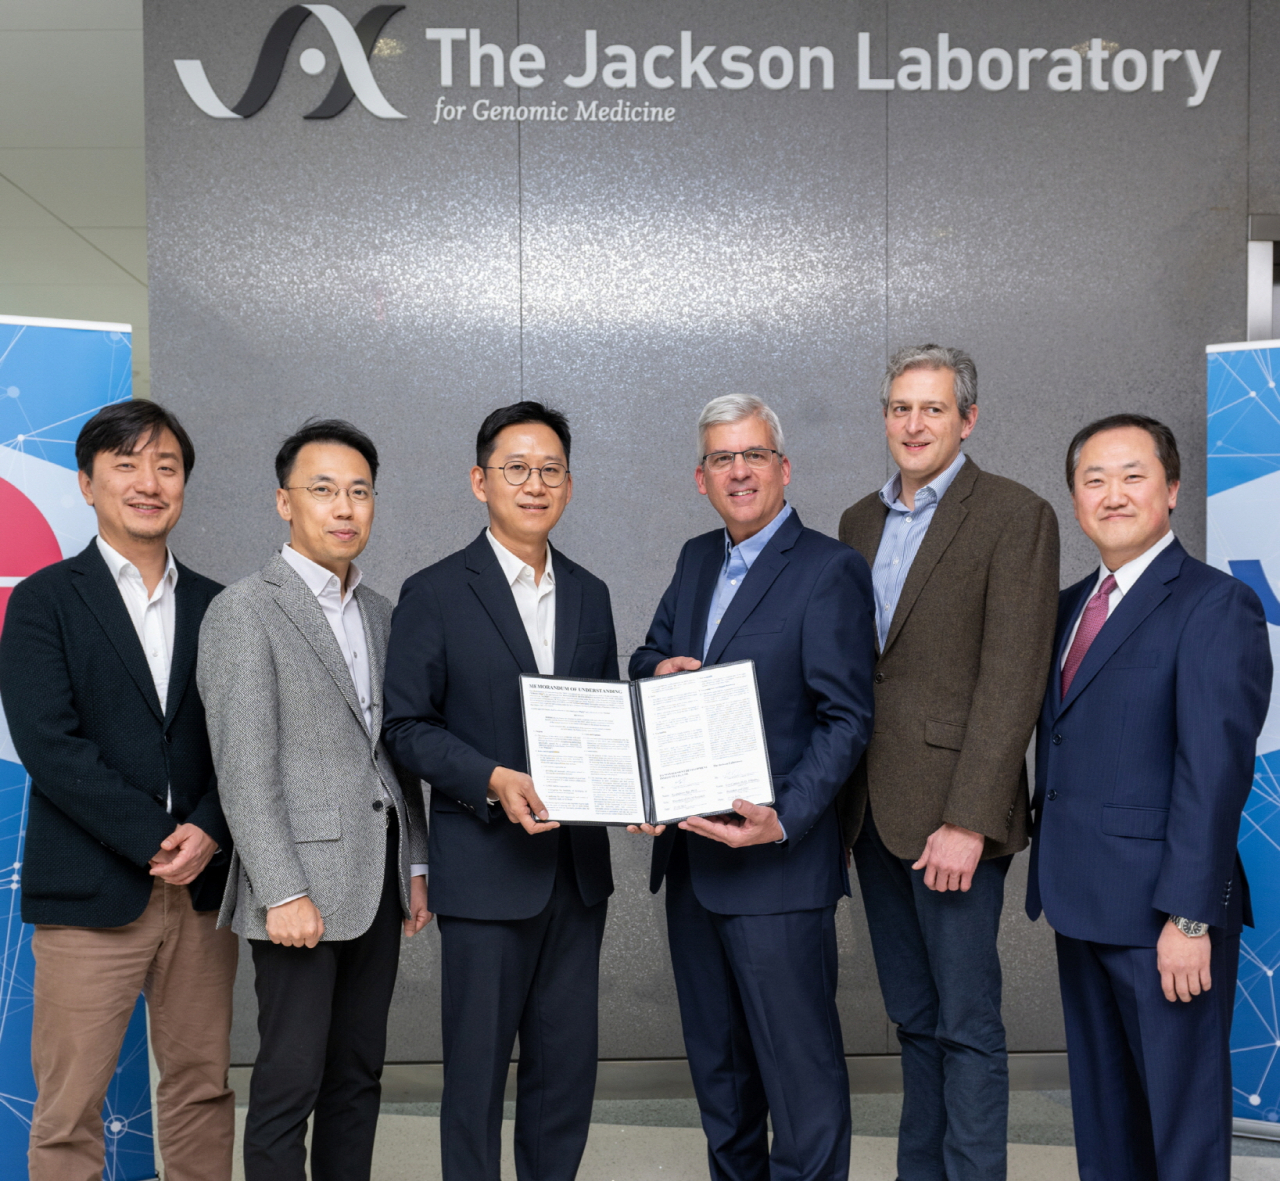 LG y el laboratorio Jackson unen fuerzas para transformar la biomedicina con IA